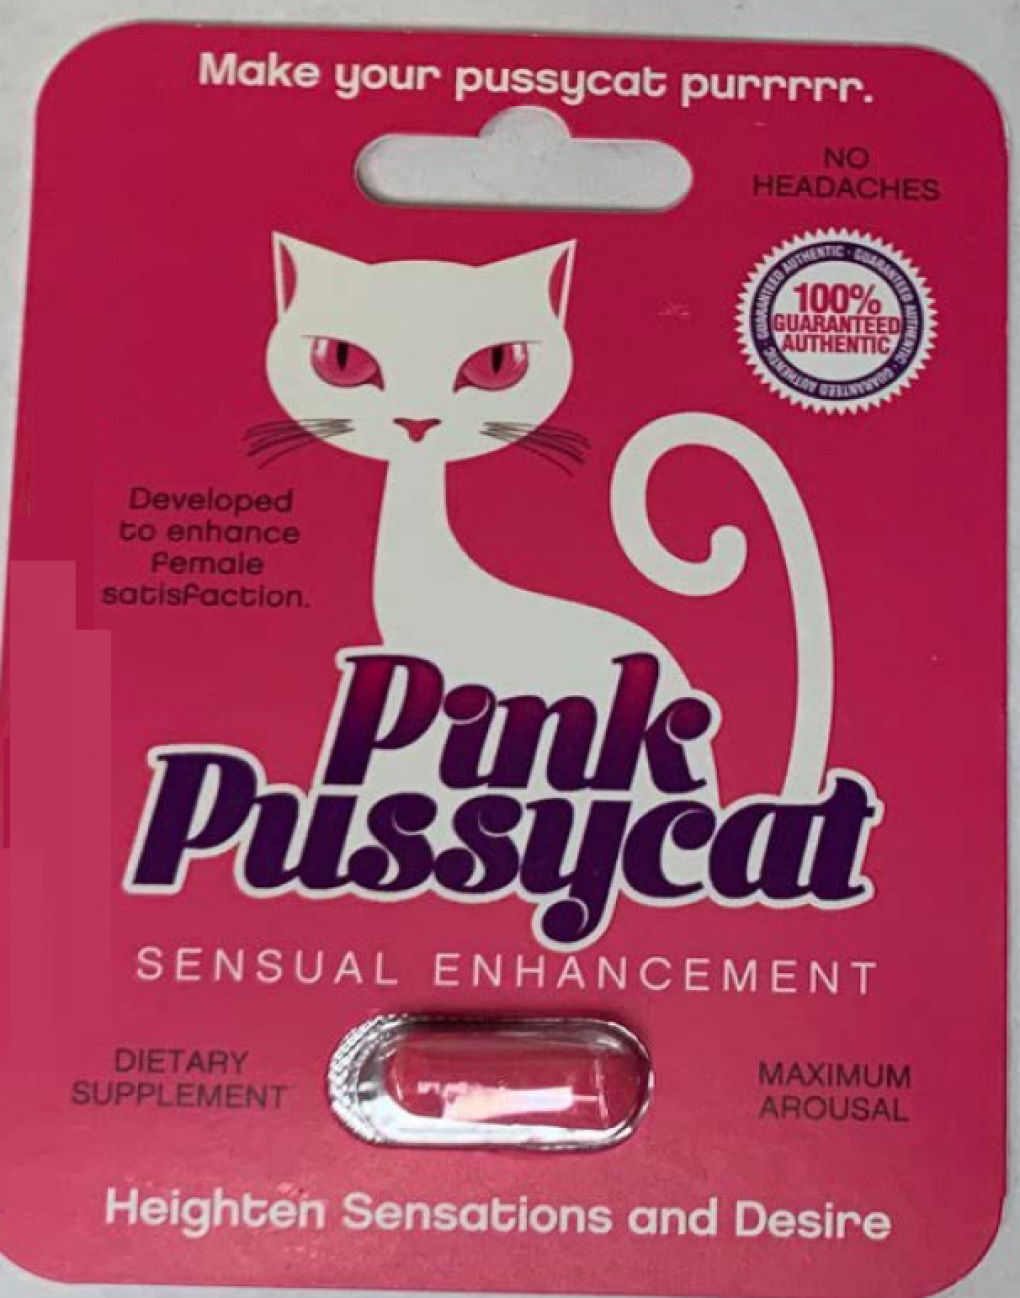 Billede af det ulovlige produkt: Pink Pussycat